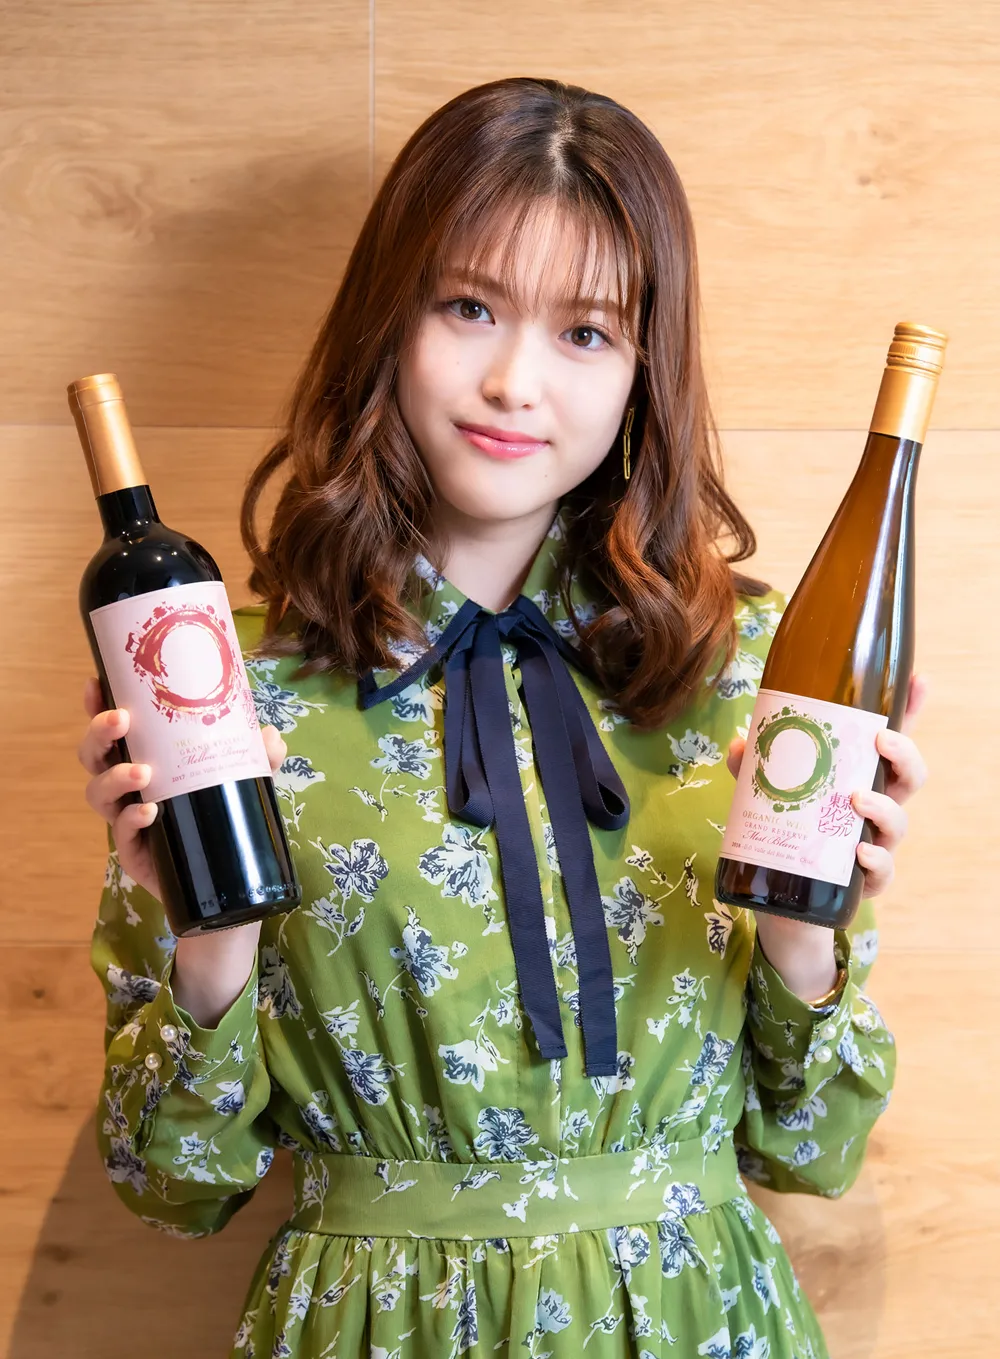 松村沙友理に映画「東京ワイン会ピープル」とコラボレーションしたワインが送られた